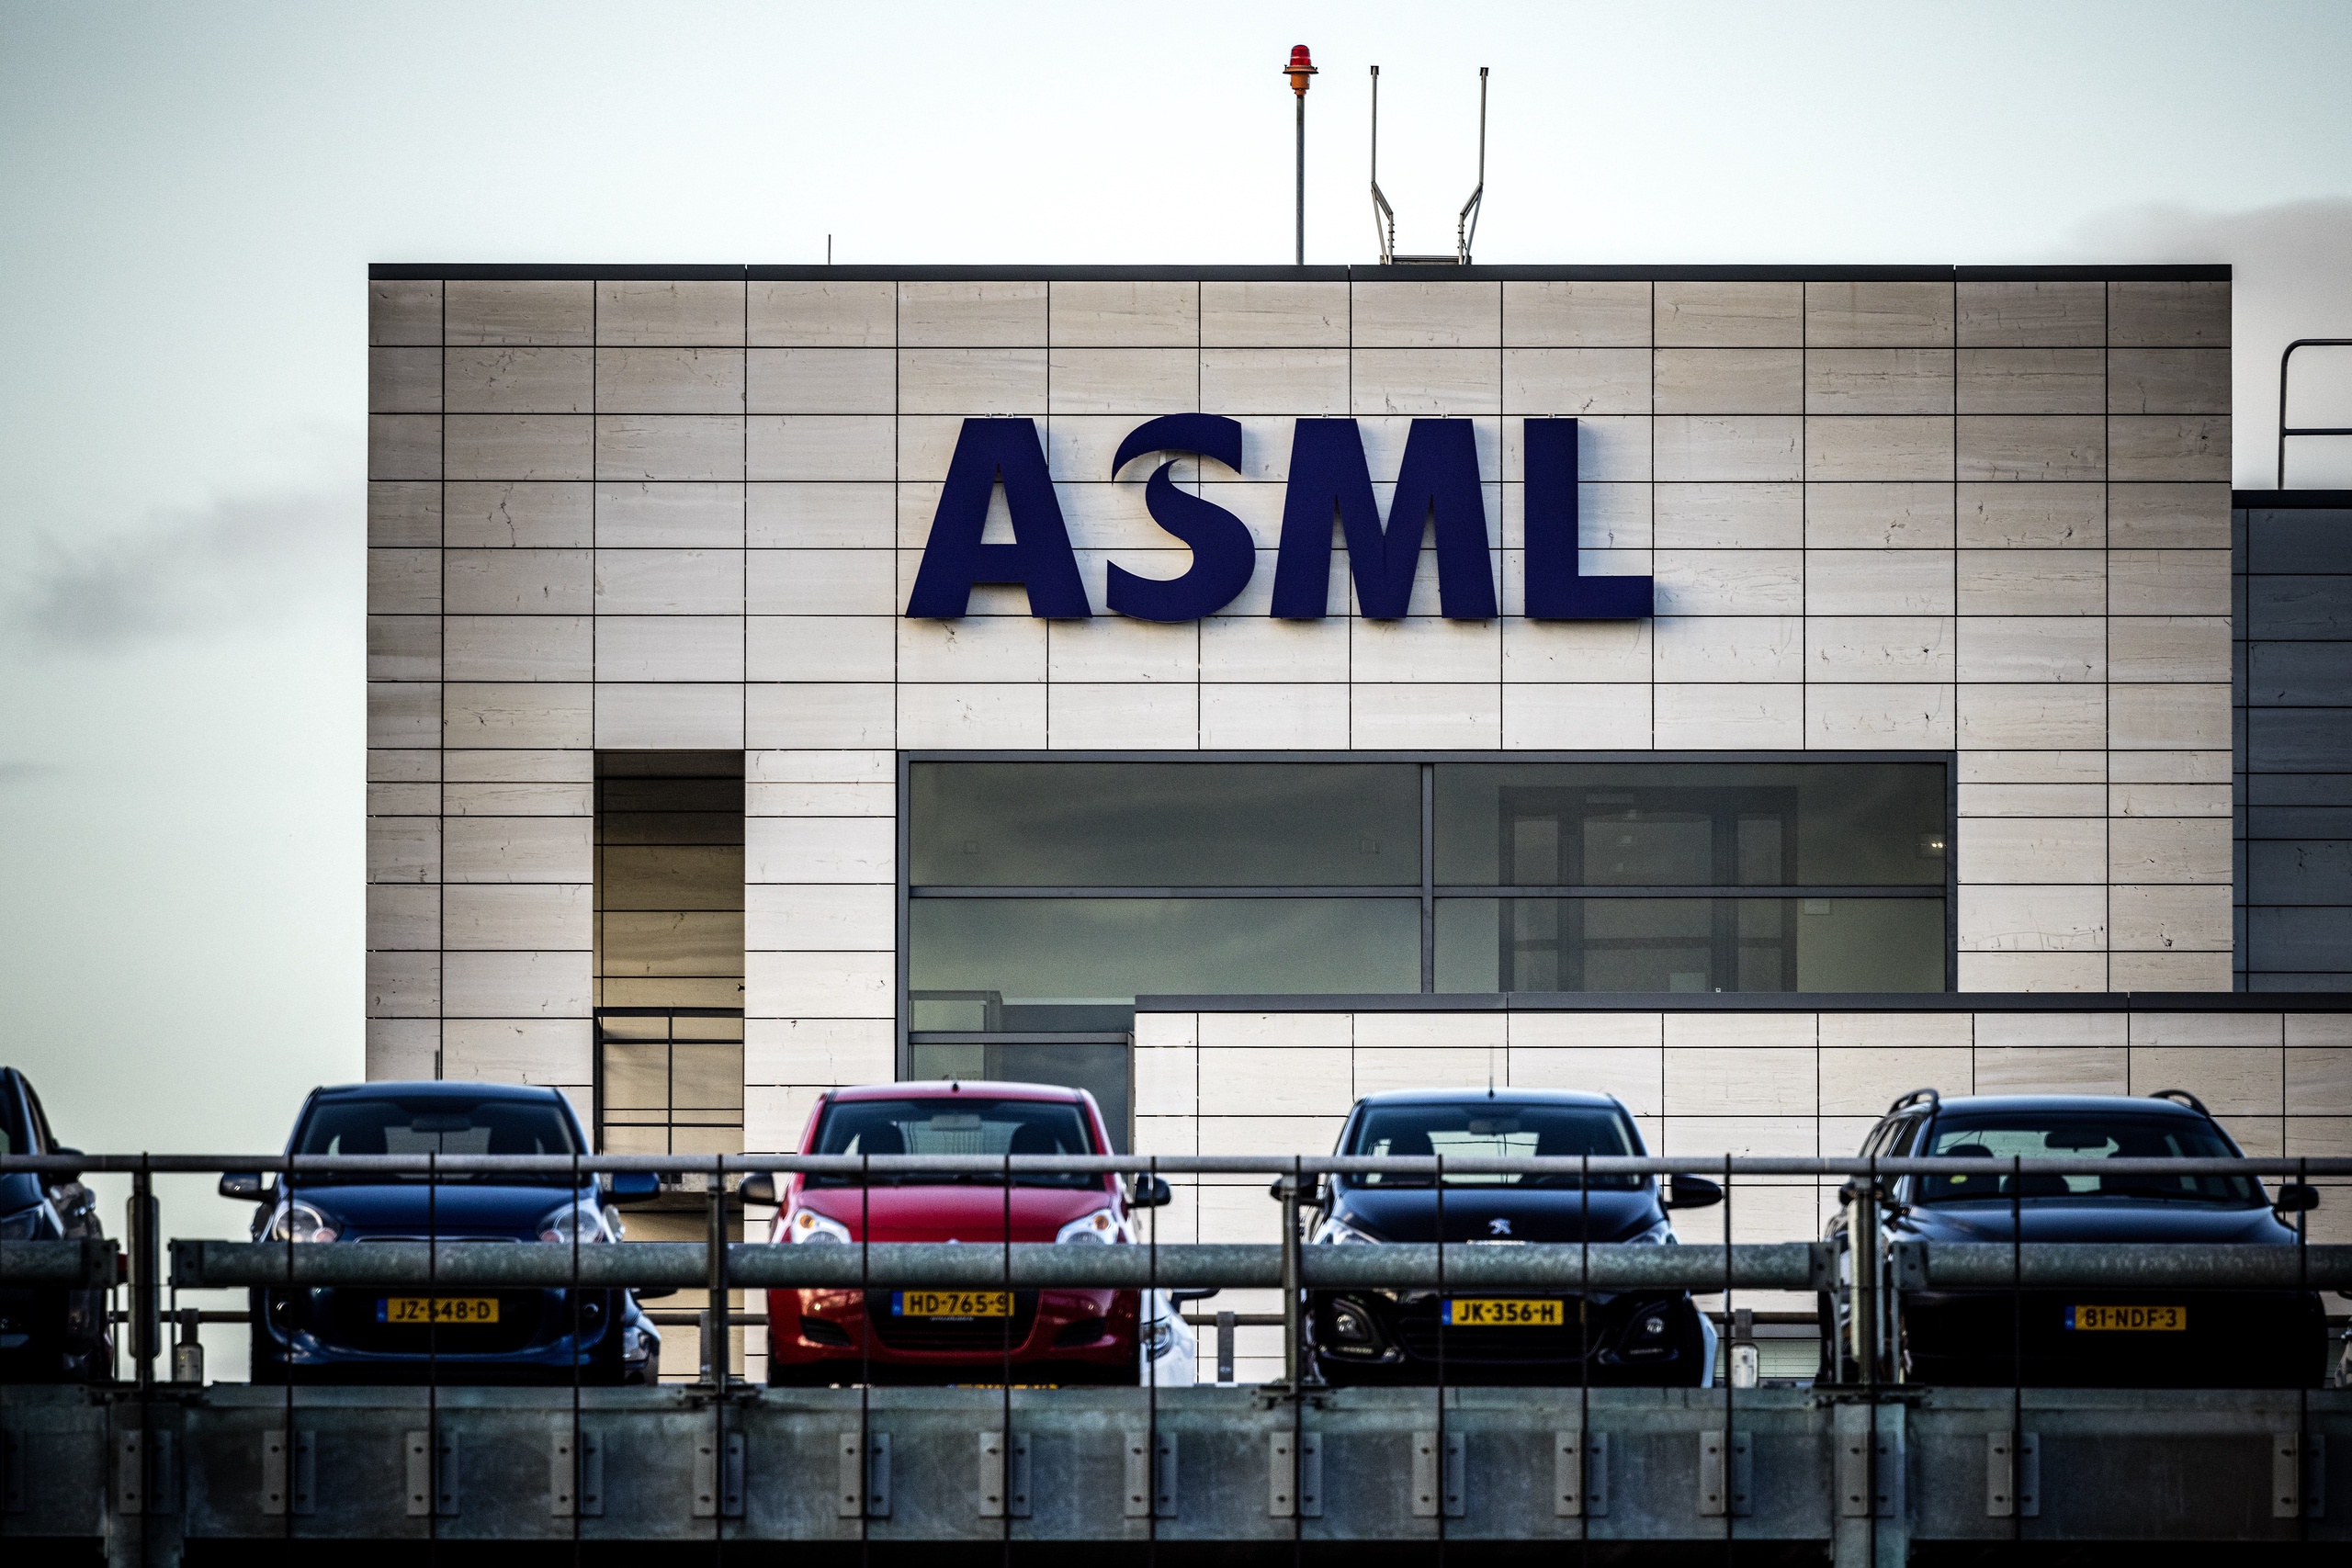 Het aangezicht van de ASML-fabriek in Veldhoven.